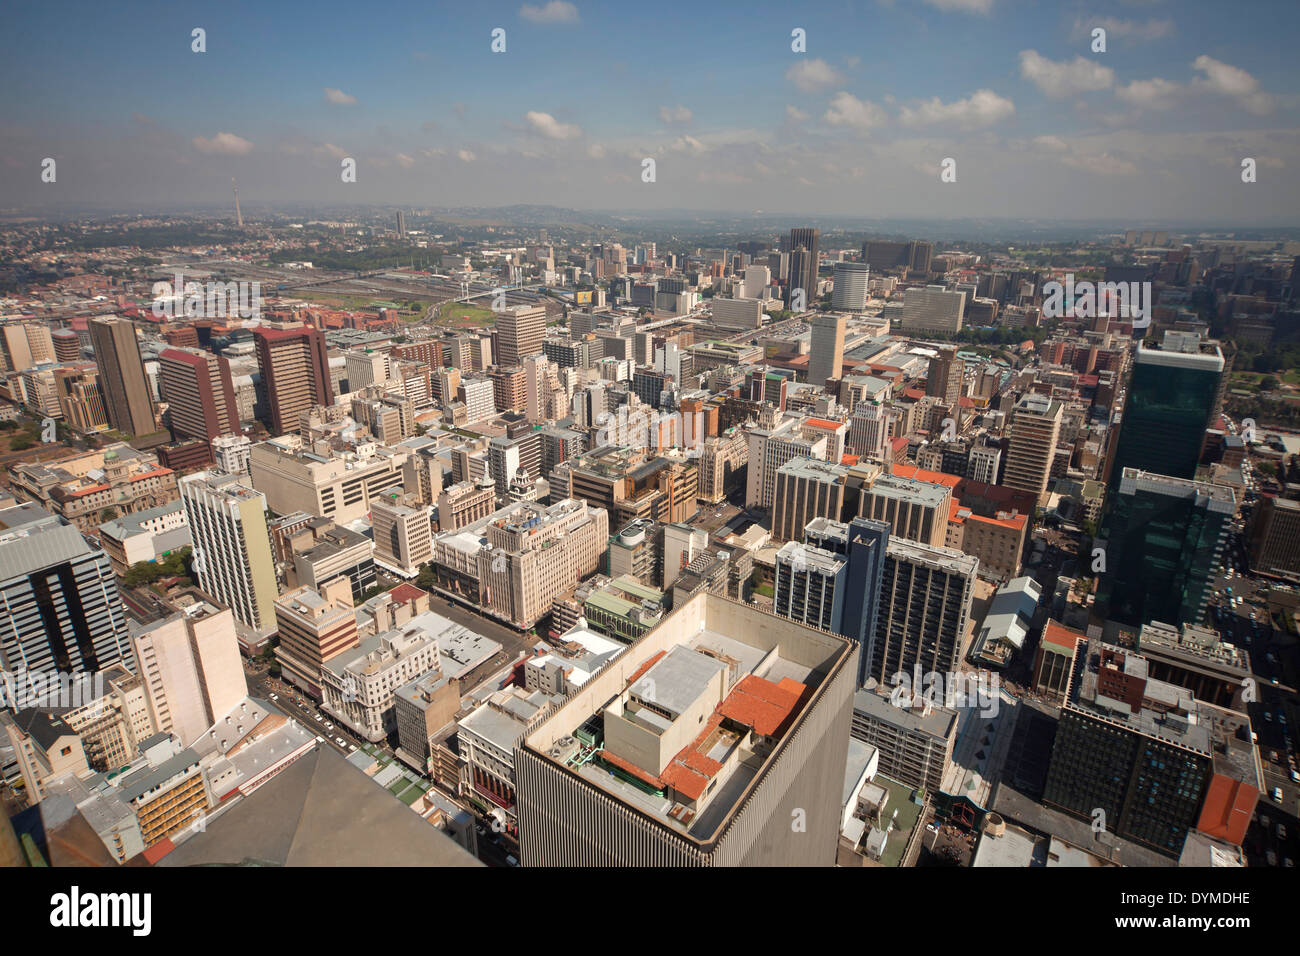 Vue sur le centre de Johannesburg et de la CDB de Carlton Centre Johannesburg, Gauteng, Afrique du Sud, l'Afrique Banque D'Images